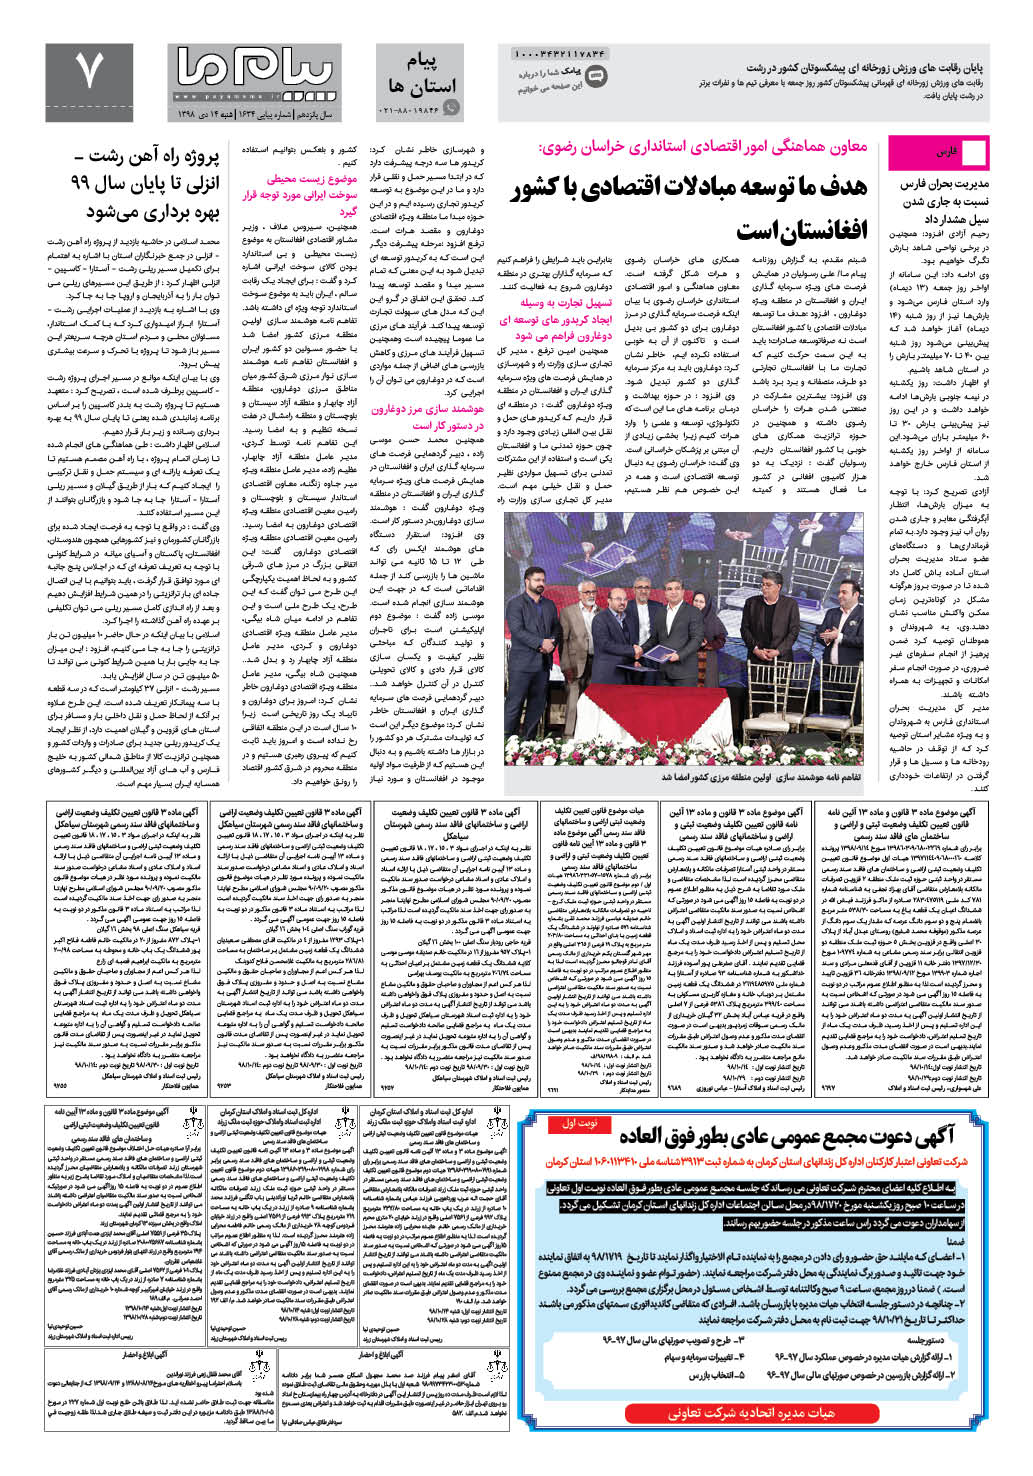 صفحه پیام استان ها شماره 1634 روزنامه پیام ما